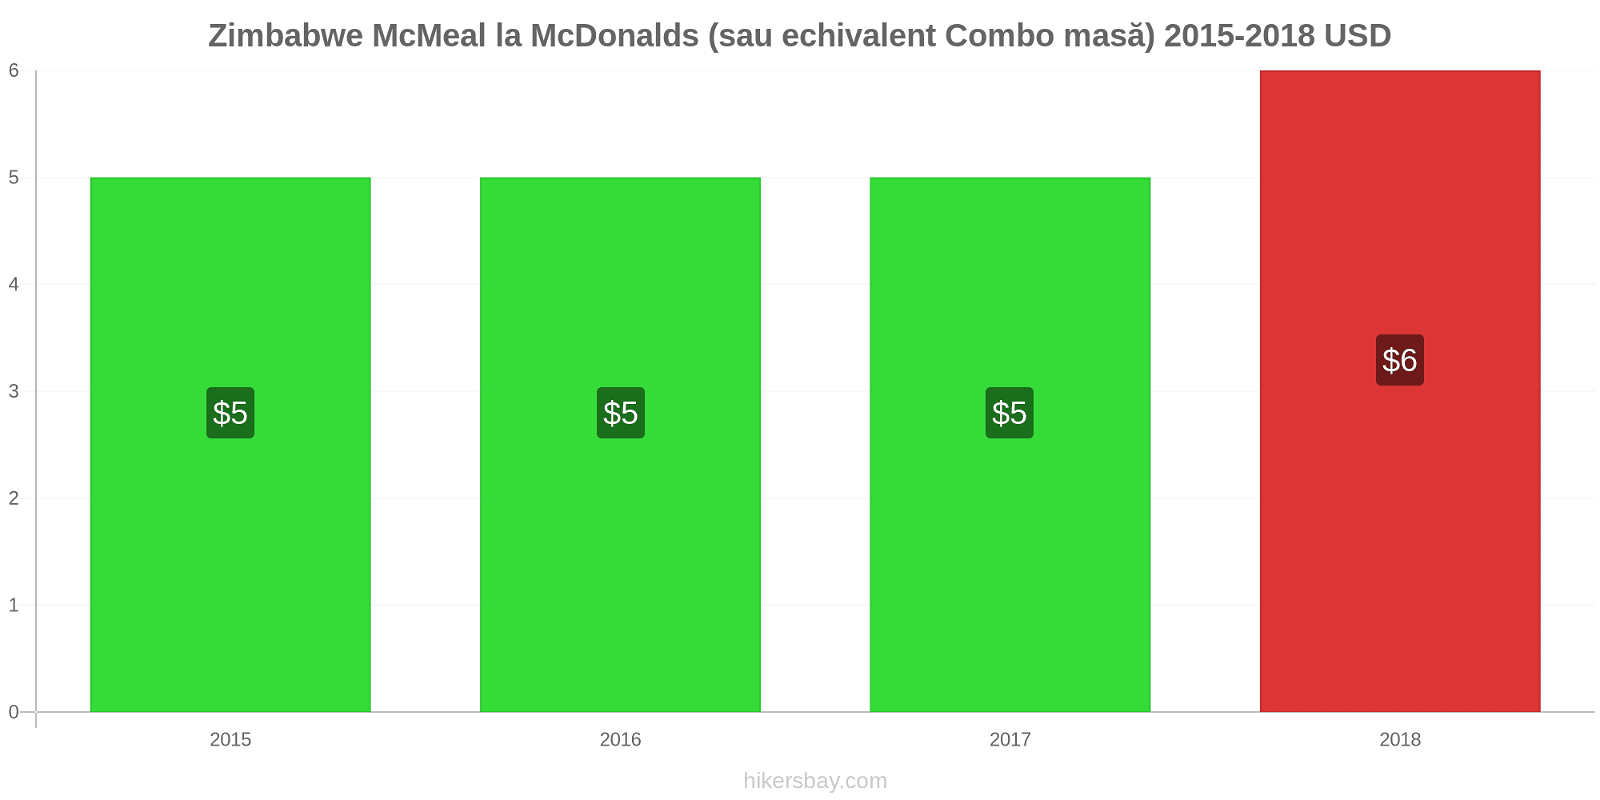 Zimbabwe modificări de preț McMeal la McDonalds (sau echivalent Combo masă) hikersbay.com